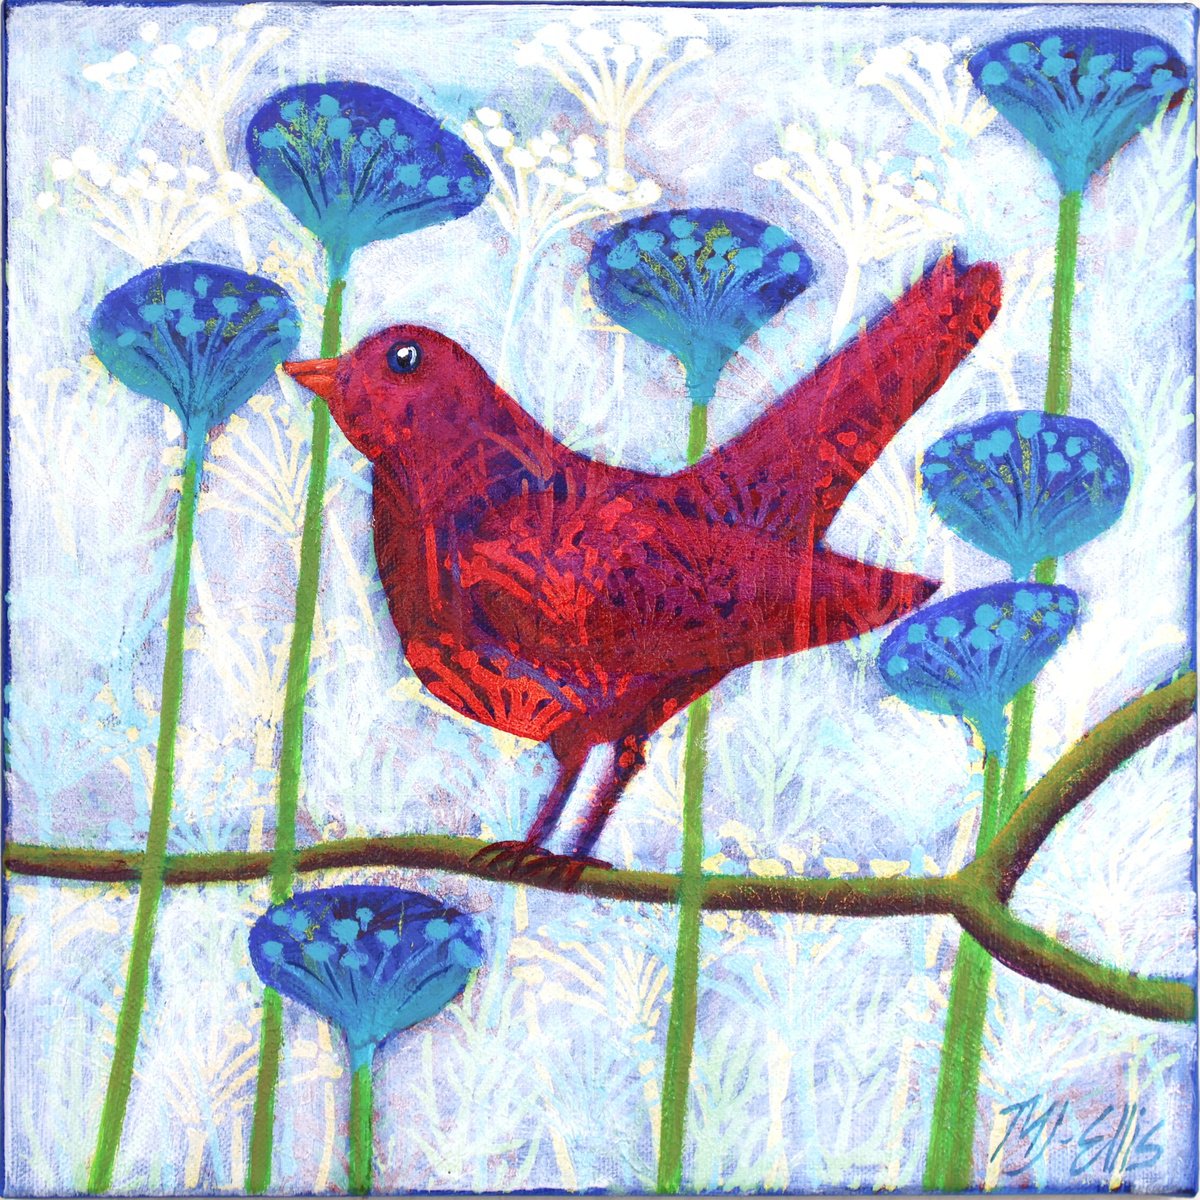 A little red Happiness bird by Mariann Johansen-Ellis